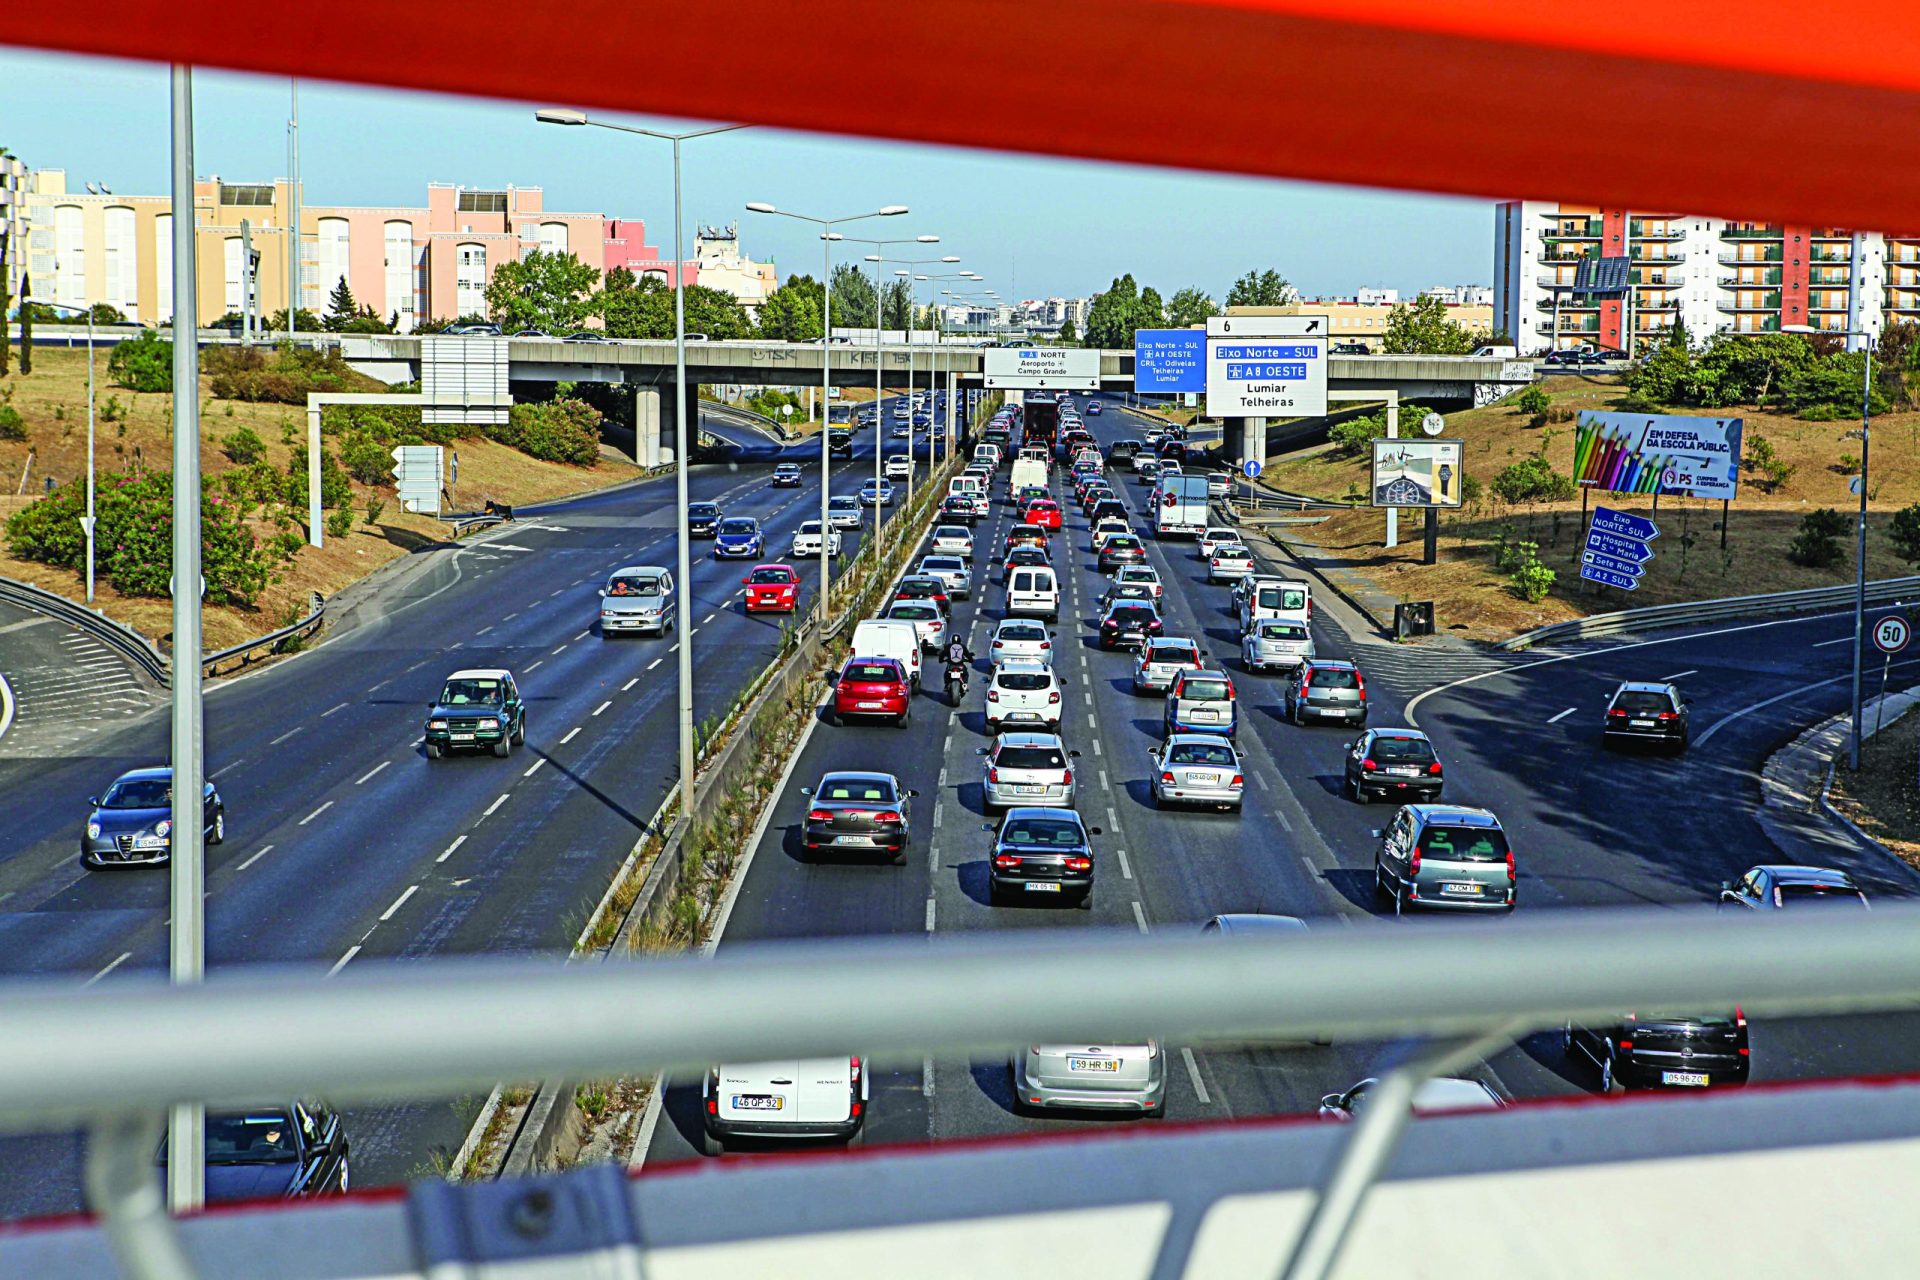 Lisboa. Vereadores têm de definir como reduzir velocidade e cortar trânsito